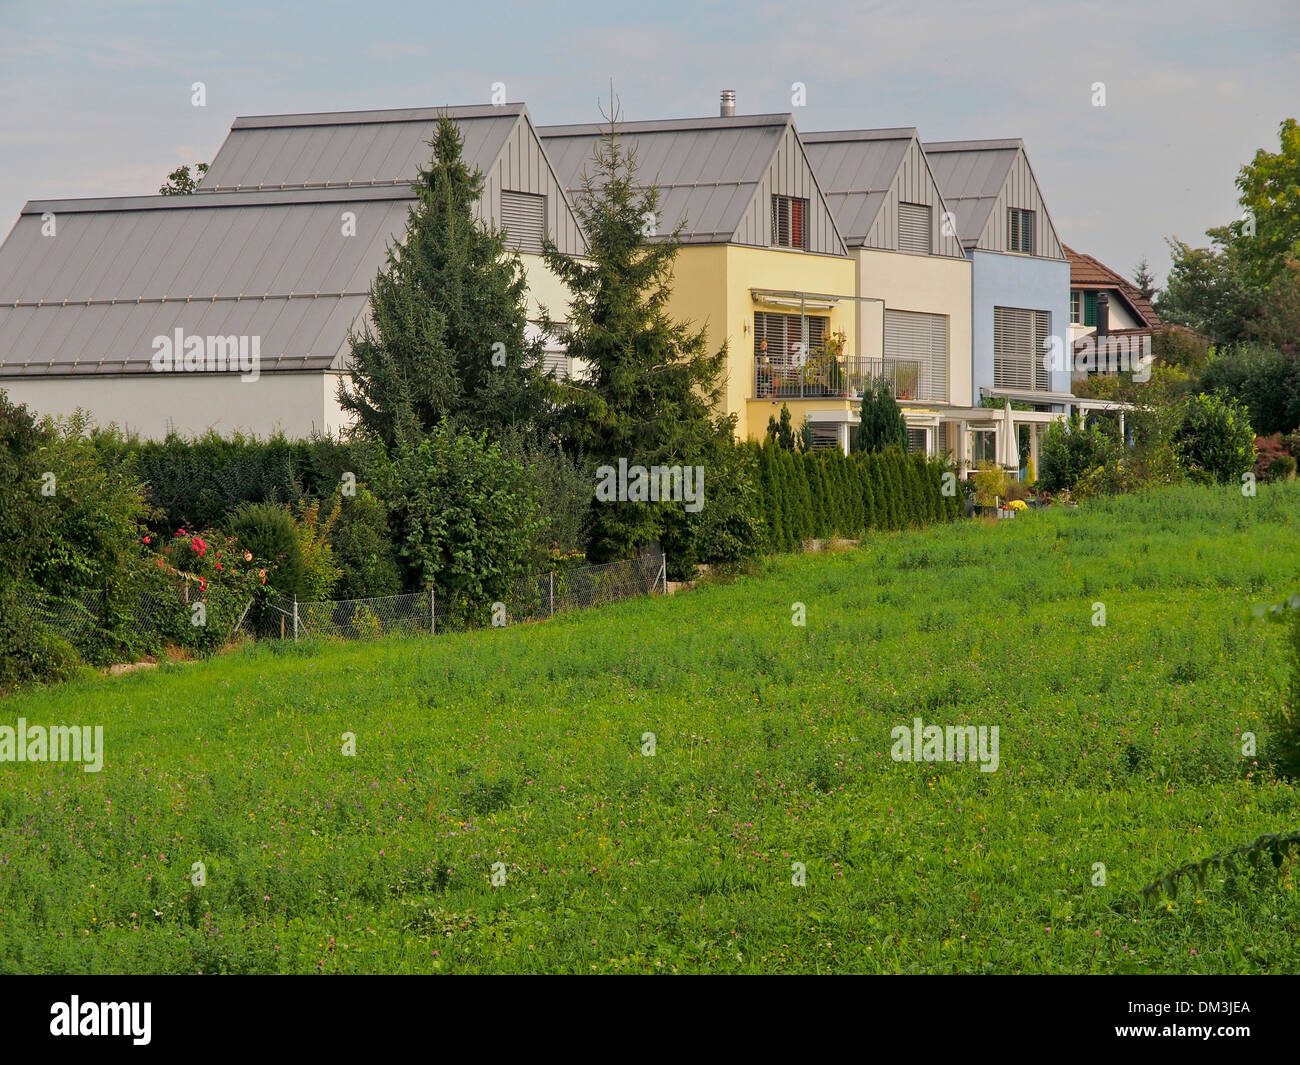 Techos coloridos triángulo fenster cocinado Dietikon Suiza otoño molder planta viviendas unifamiliares, casas de prado Foto de stock